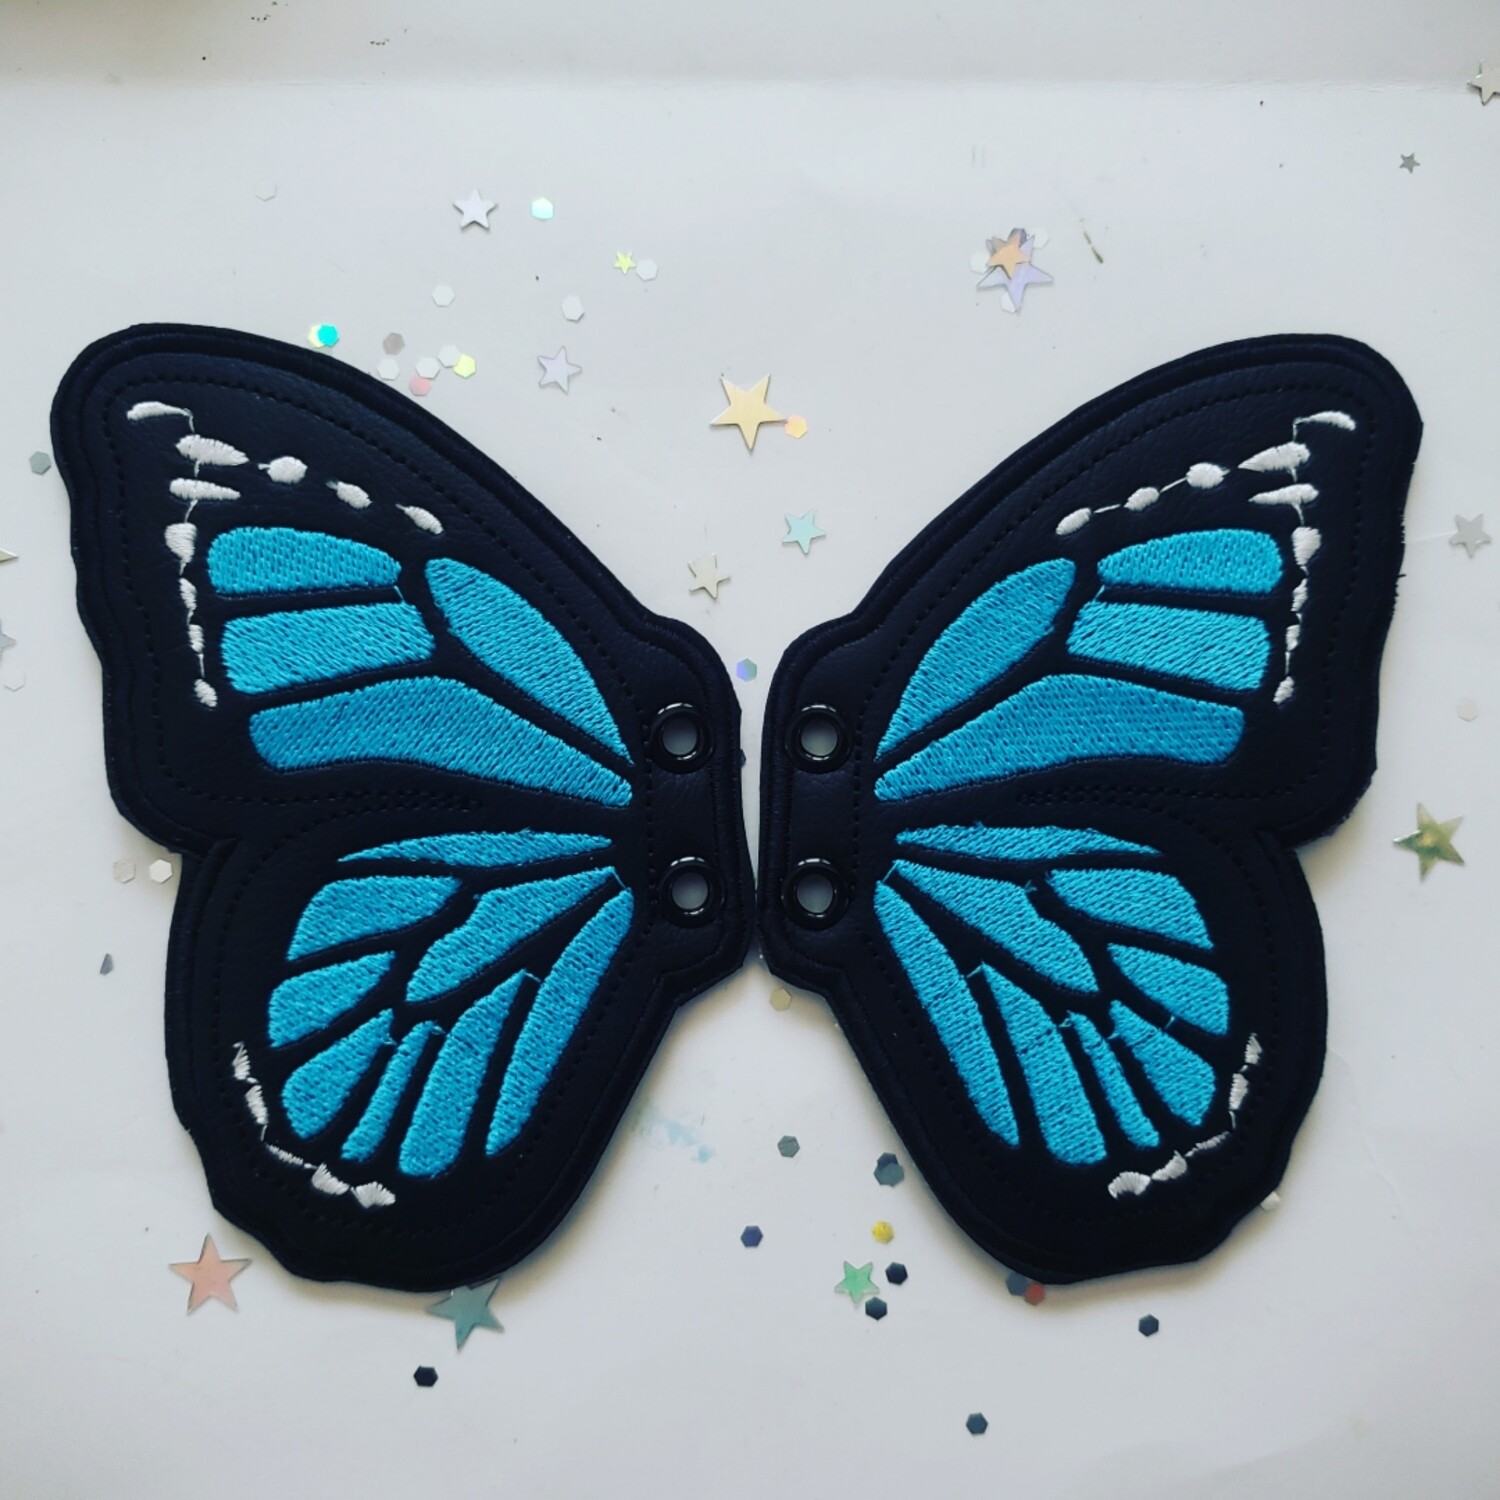 Butterfly monarch 5 inch shoe wings in custom colors